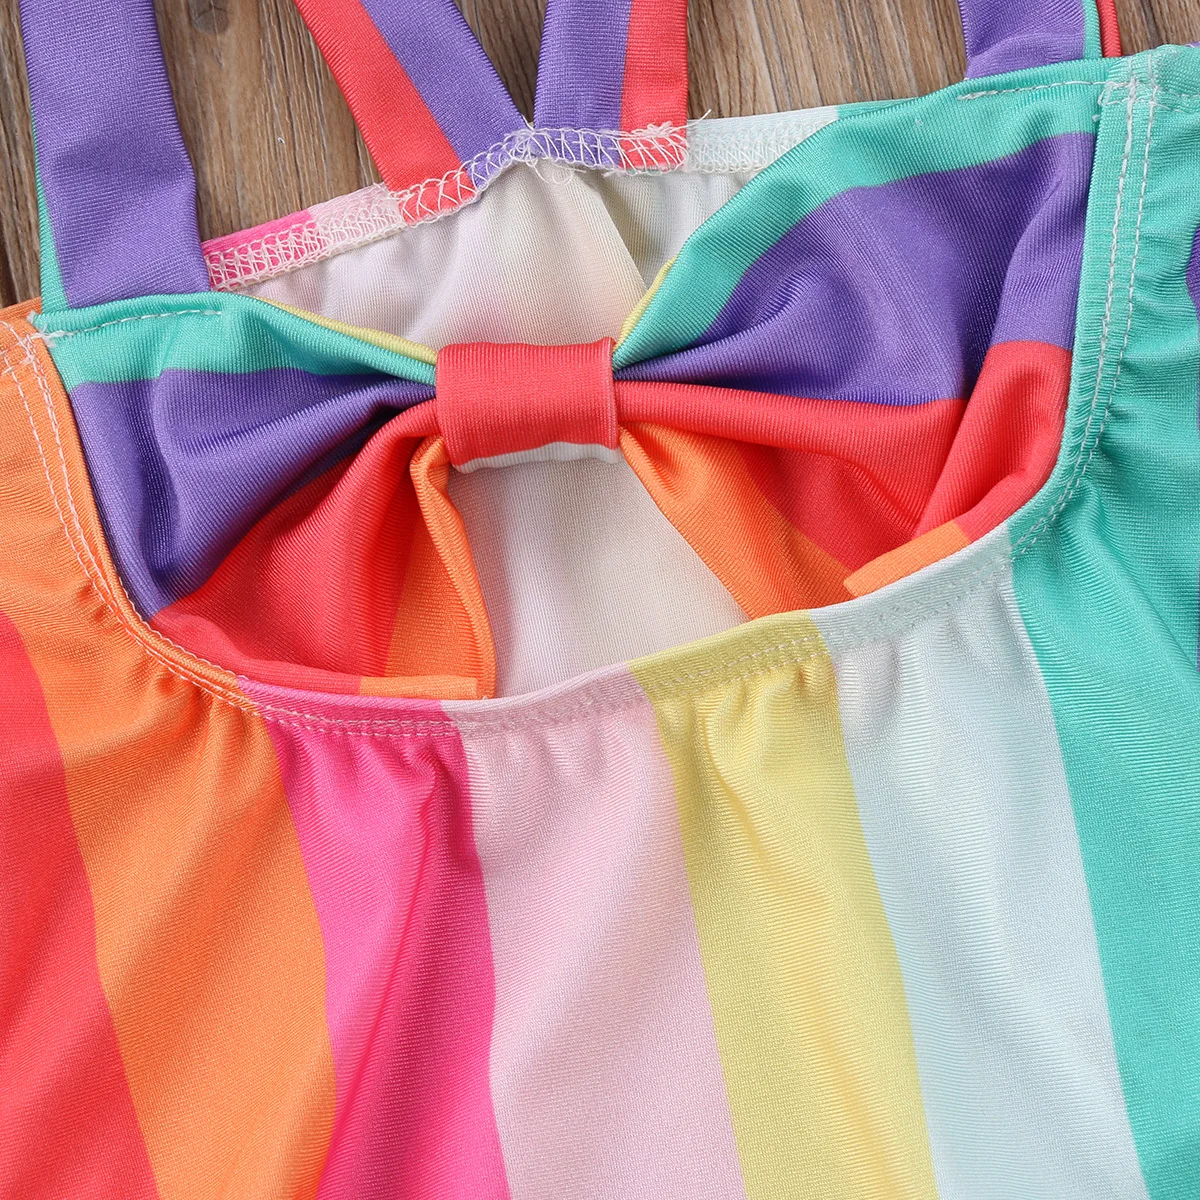 ImCute/ г. Одежда для девочек Радужный купальный костюм для маленьких девочек, бикини, купальный костюм для маленьких девочек пляжная одежда для детей от 0 до 5 лет